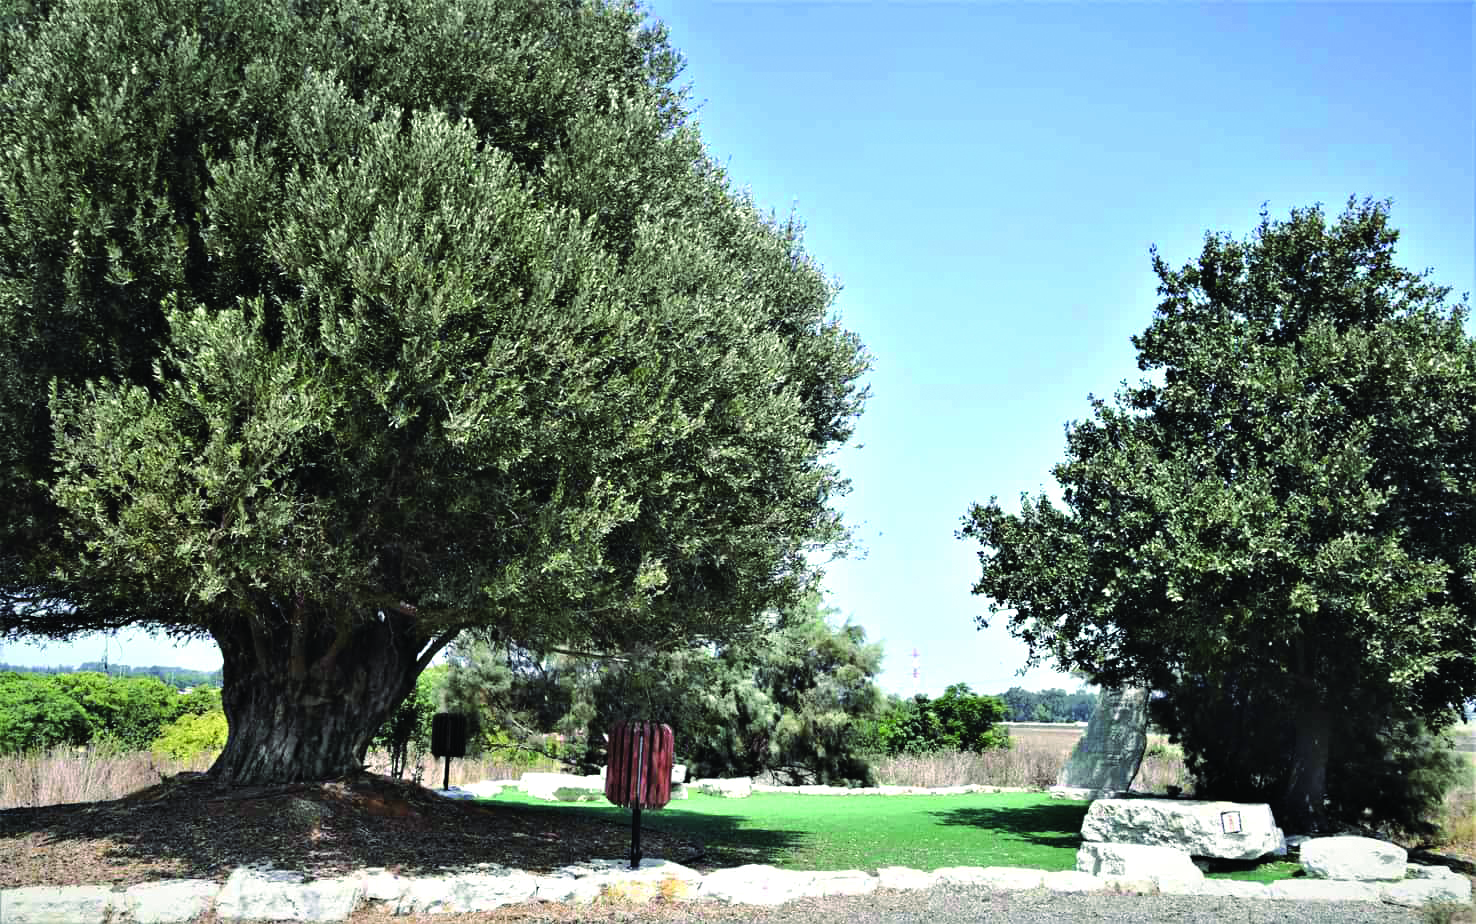 עץ הזית בראש תל שבח. סימון השביל השרון על האבן בצד ימין צילום דני בר